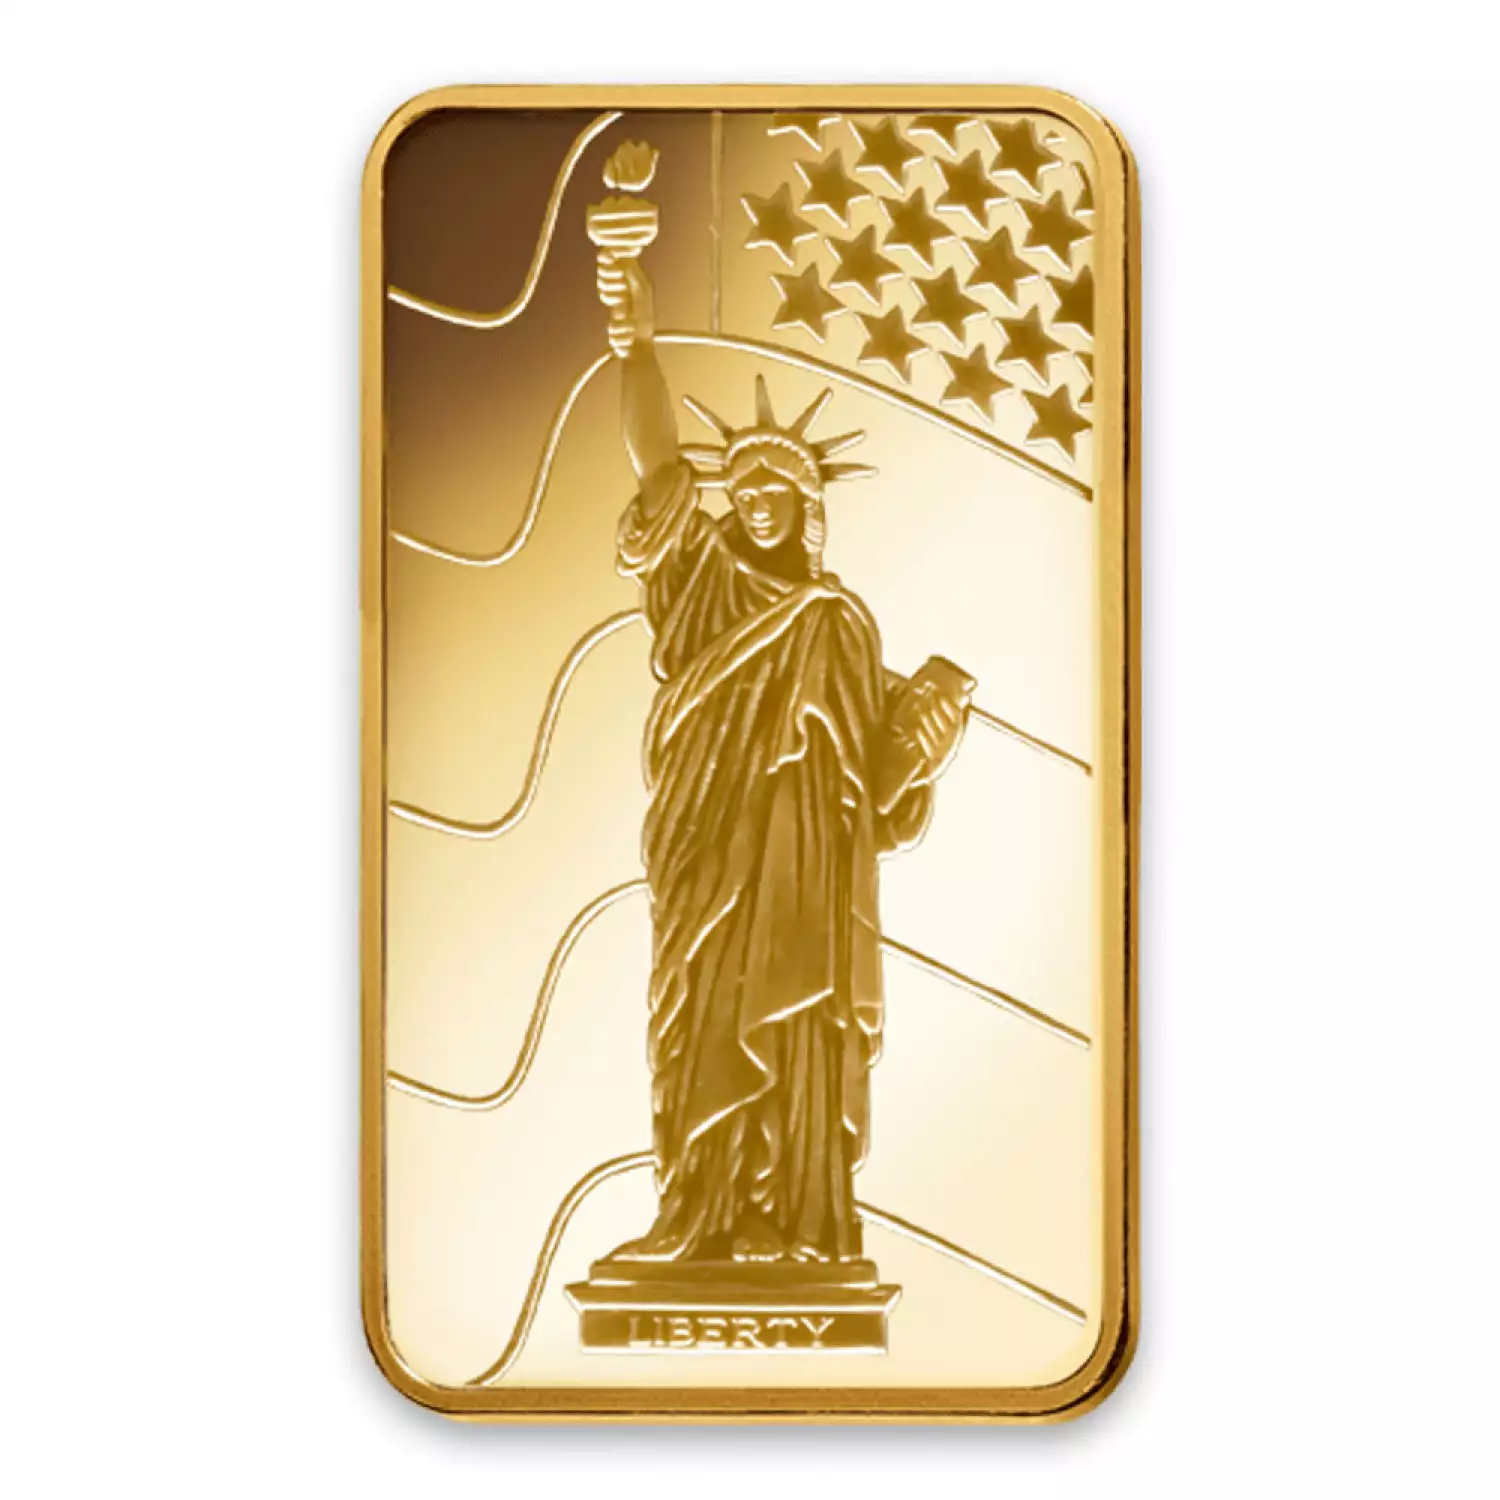 1g PAMP Gold Bar - Liberty (2)